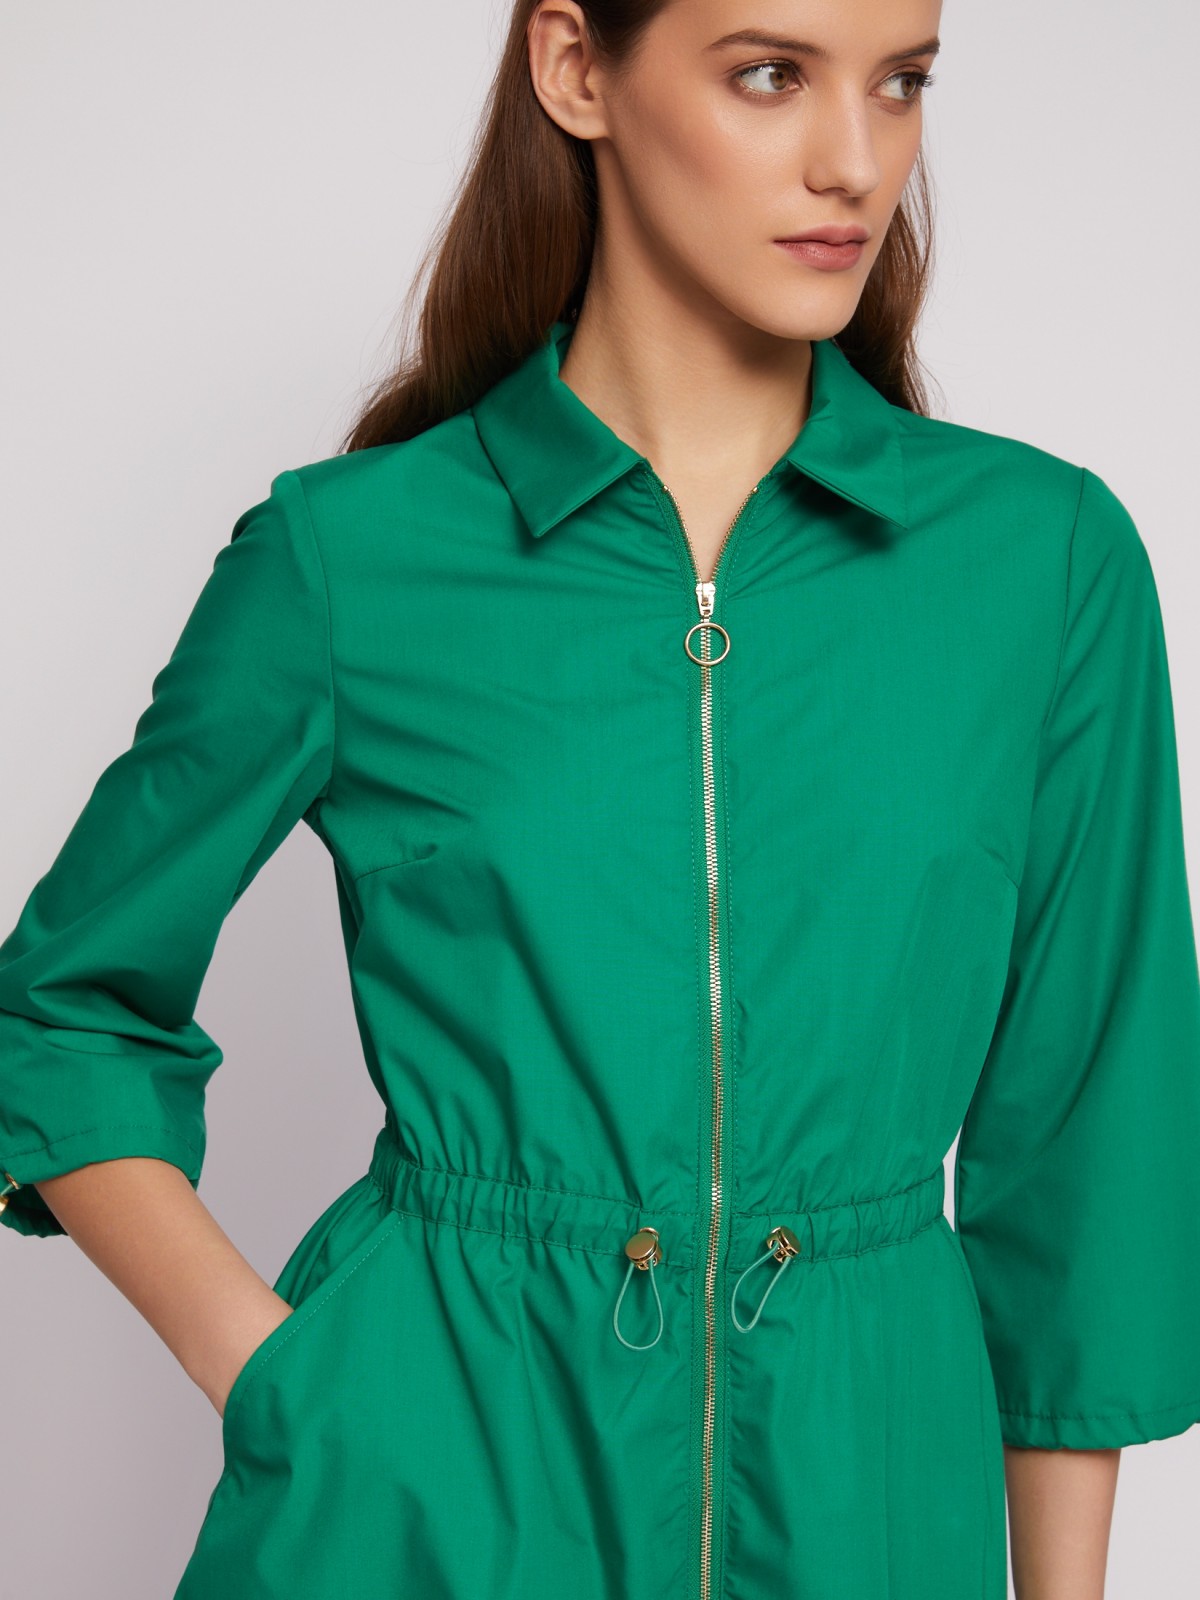 Платье-рубашка на молнии с кулиской zolla 024218259153, цвет зеленый, размер M - фото 4